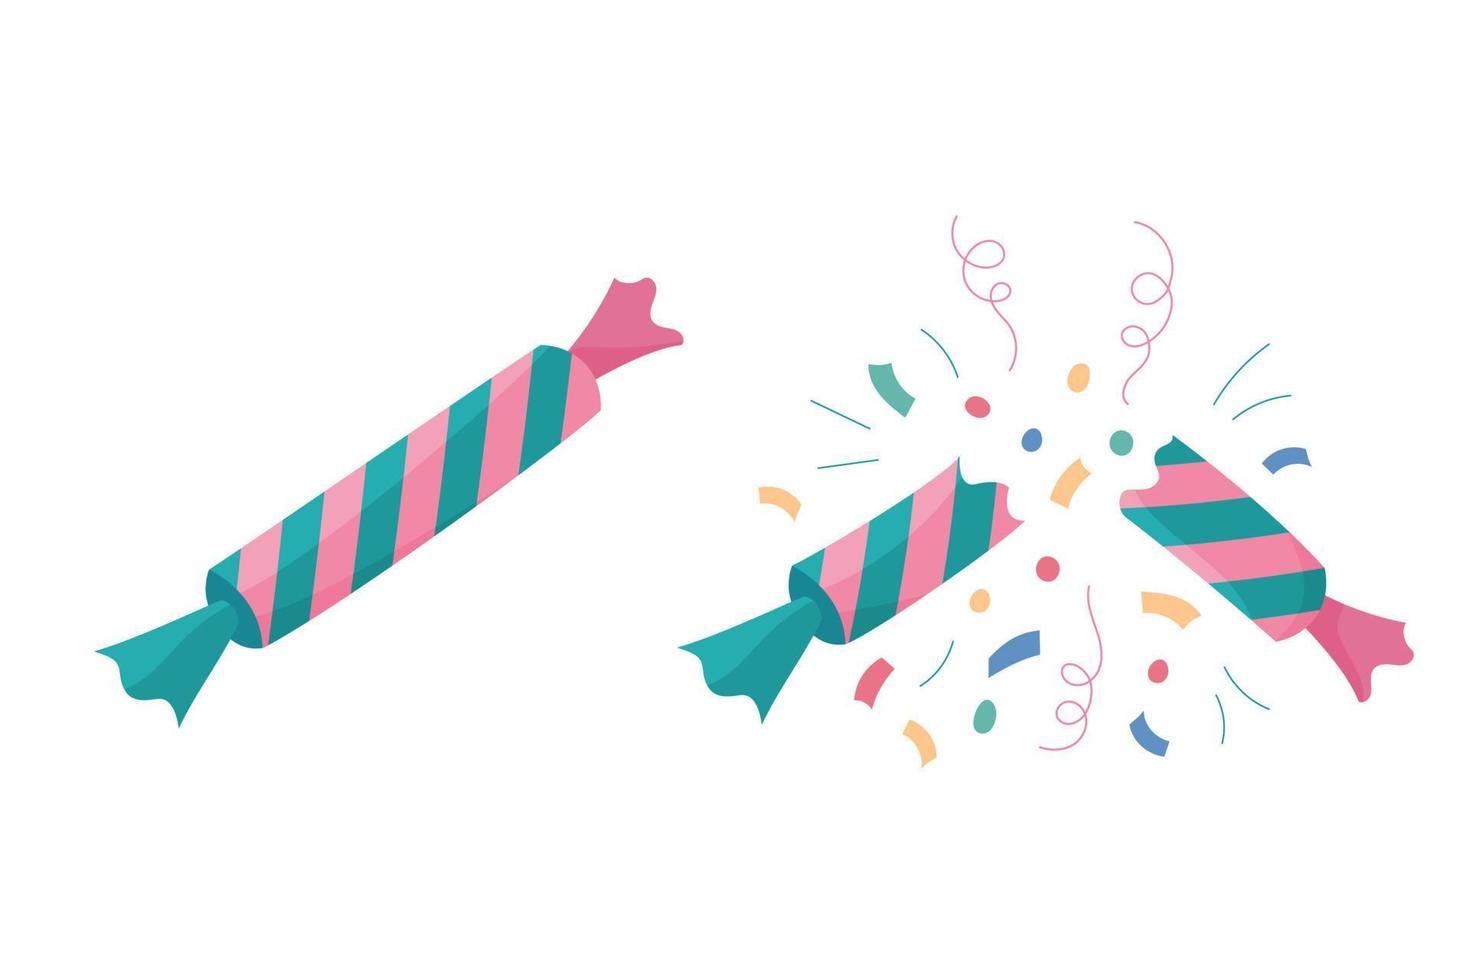 juego de galletas navideñas. ilustración vectorial plana aislada de galletas y confeti de caramelos navideños enteros y rotos. lindo colorido elemento de diseño de navidad, año nuevo y cumpleaños vector